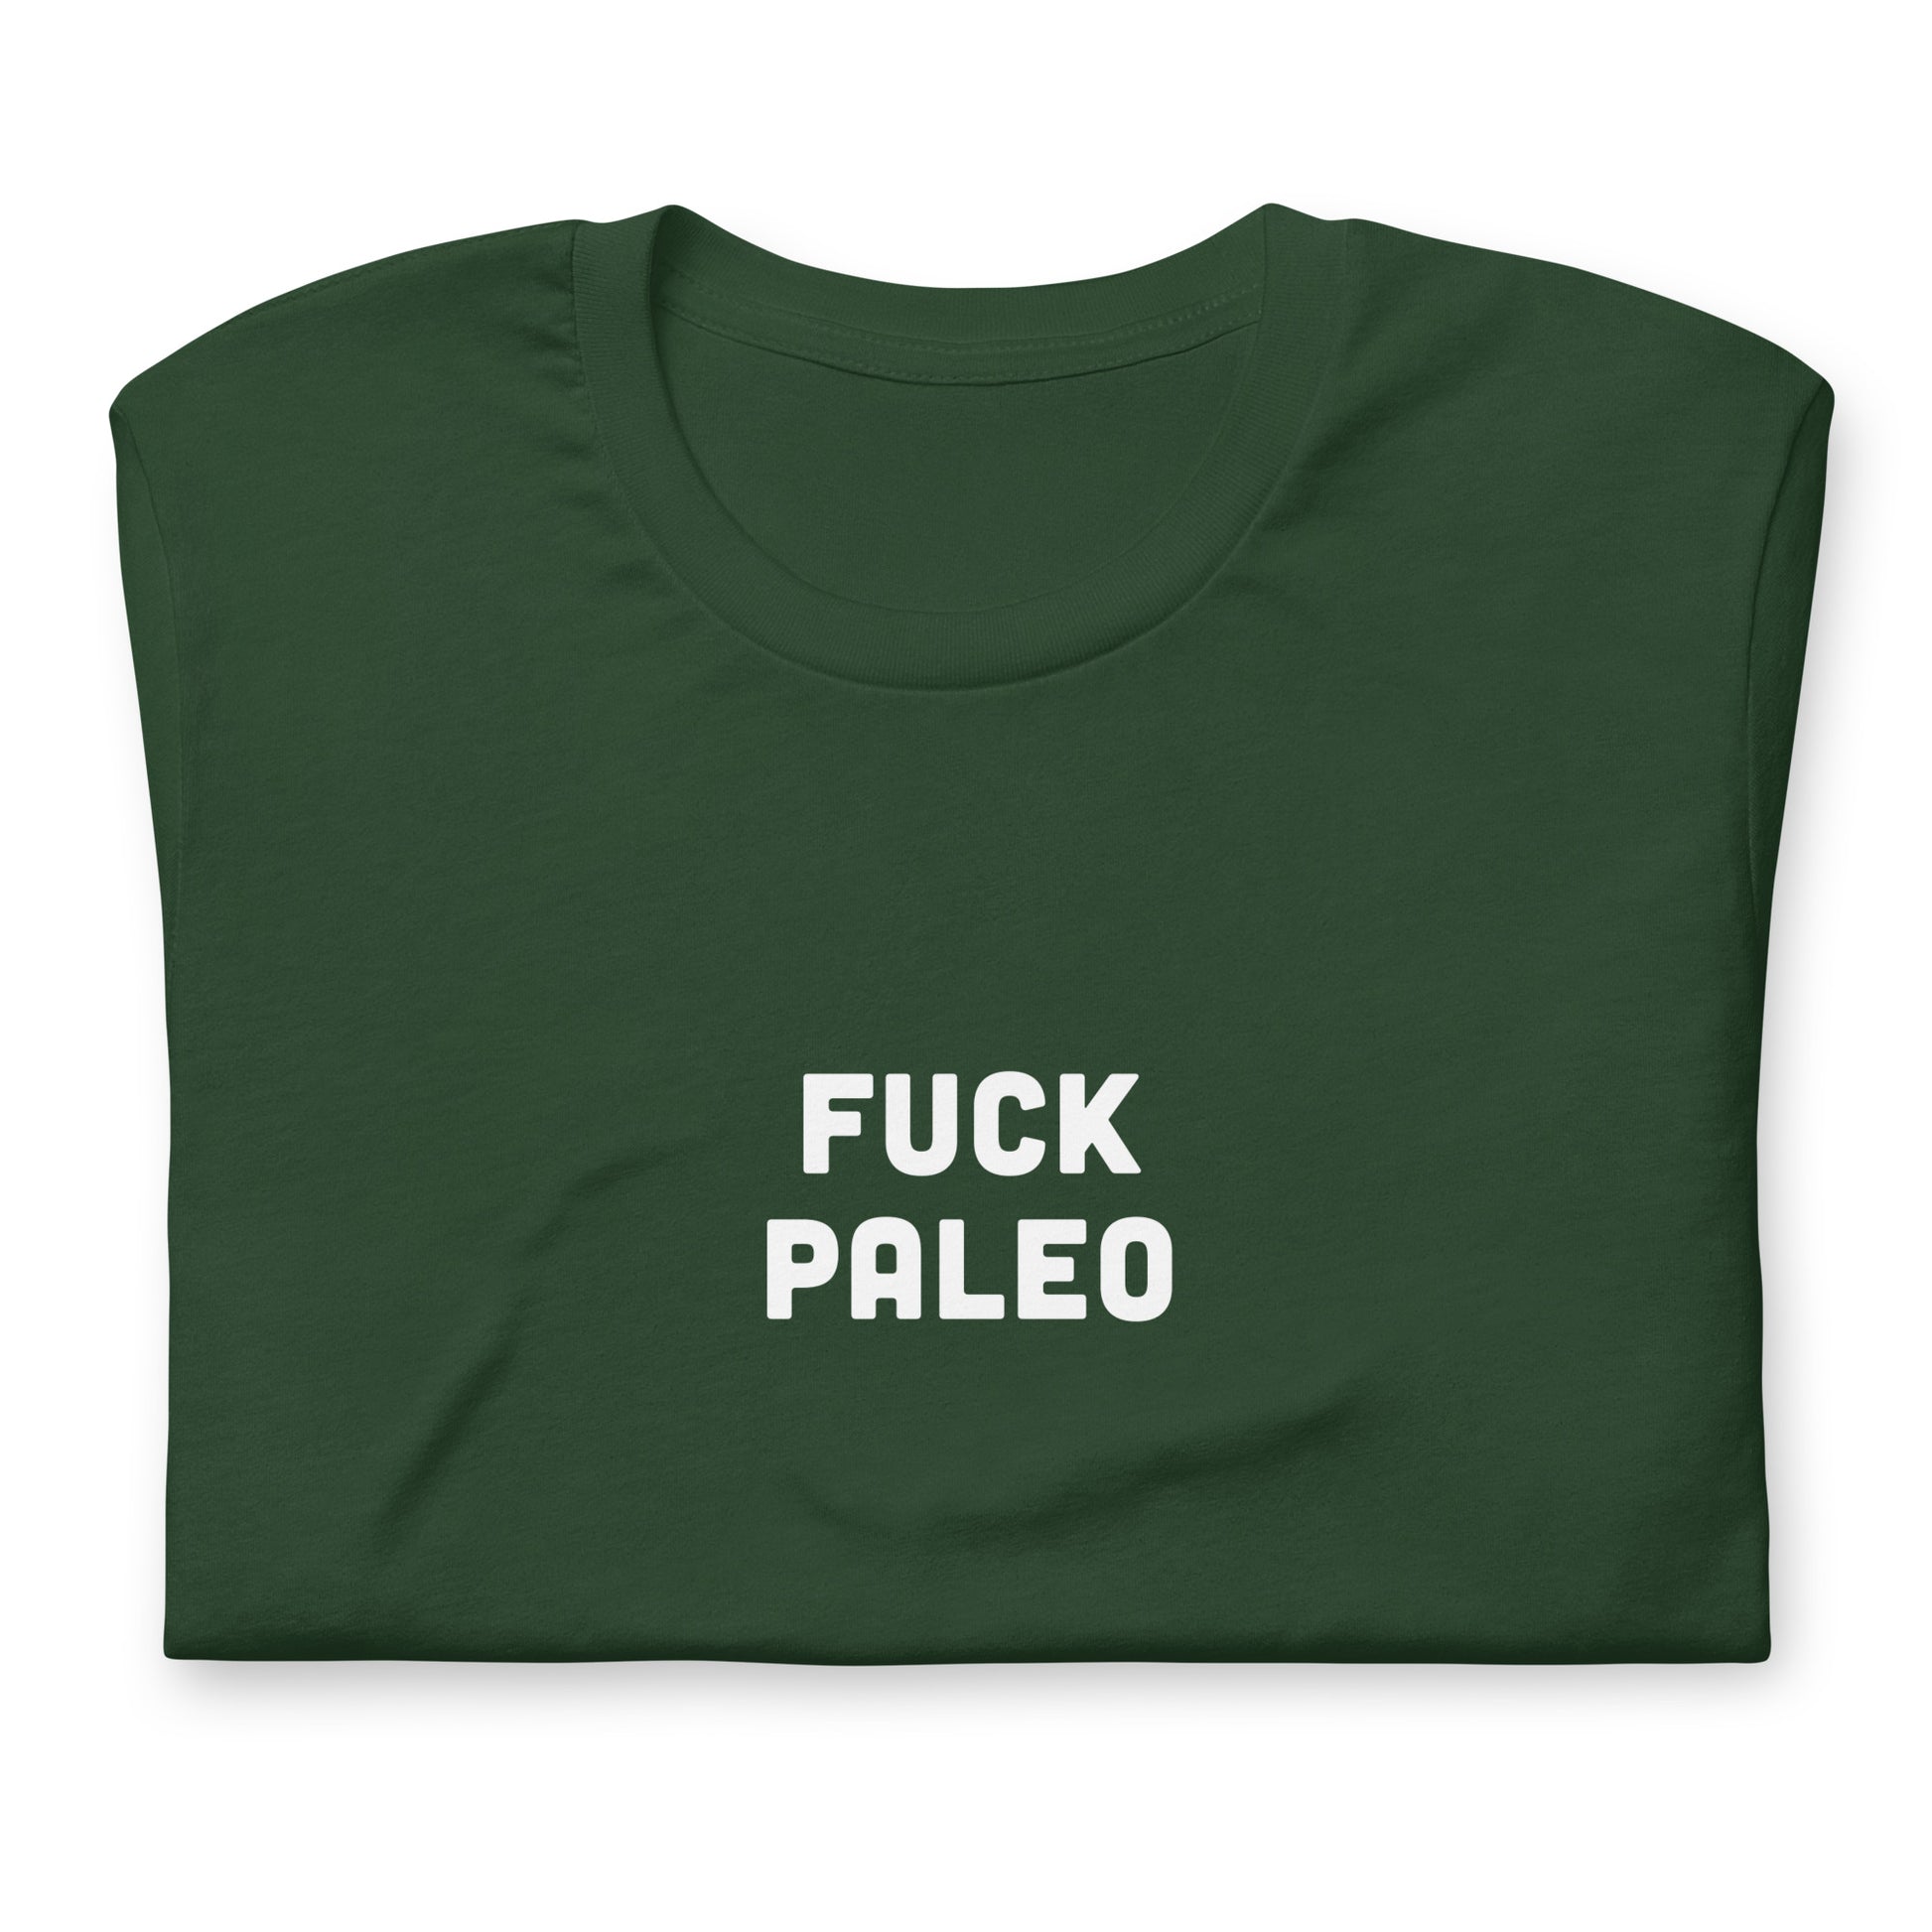 Fuck Paleo T-Shirt Size XL Color Black